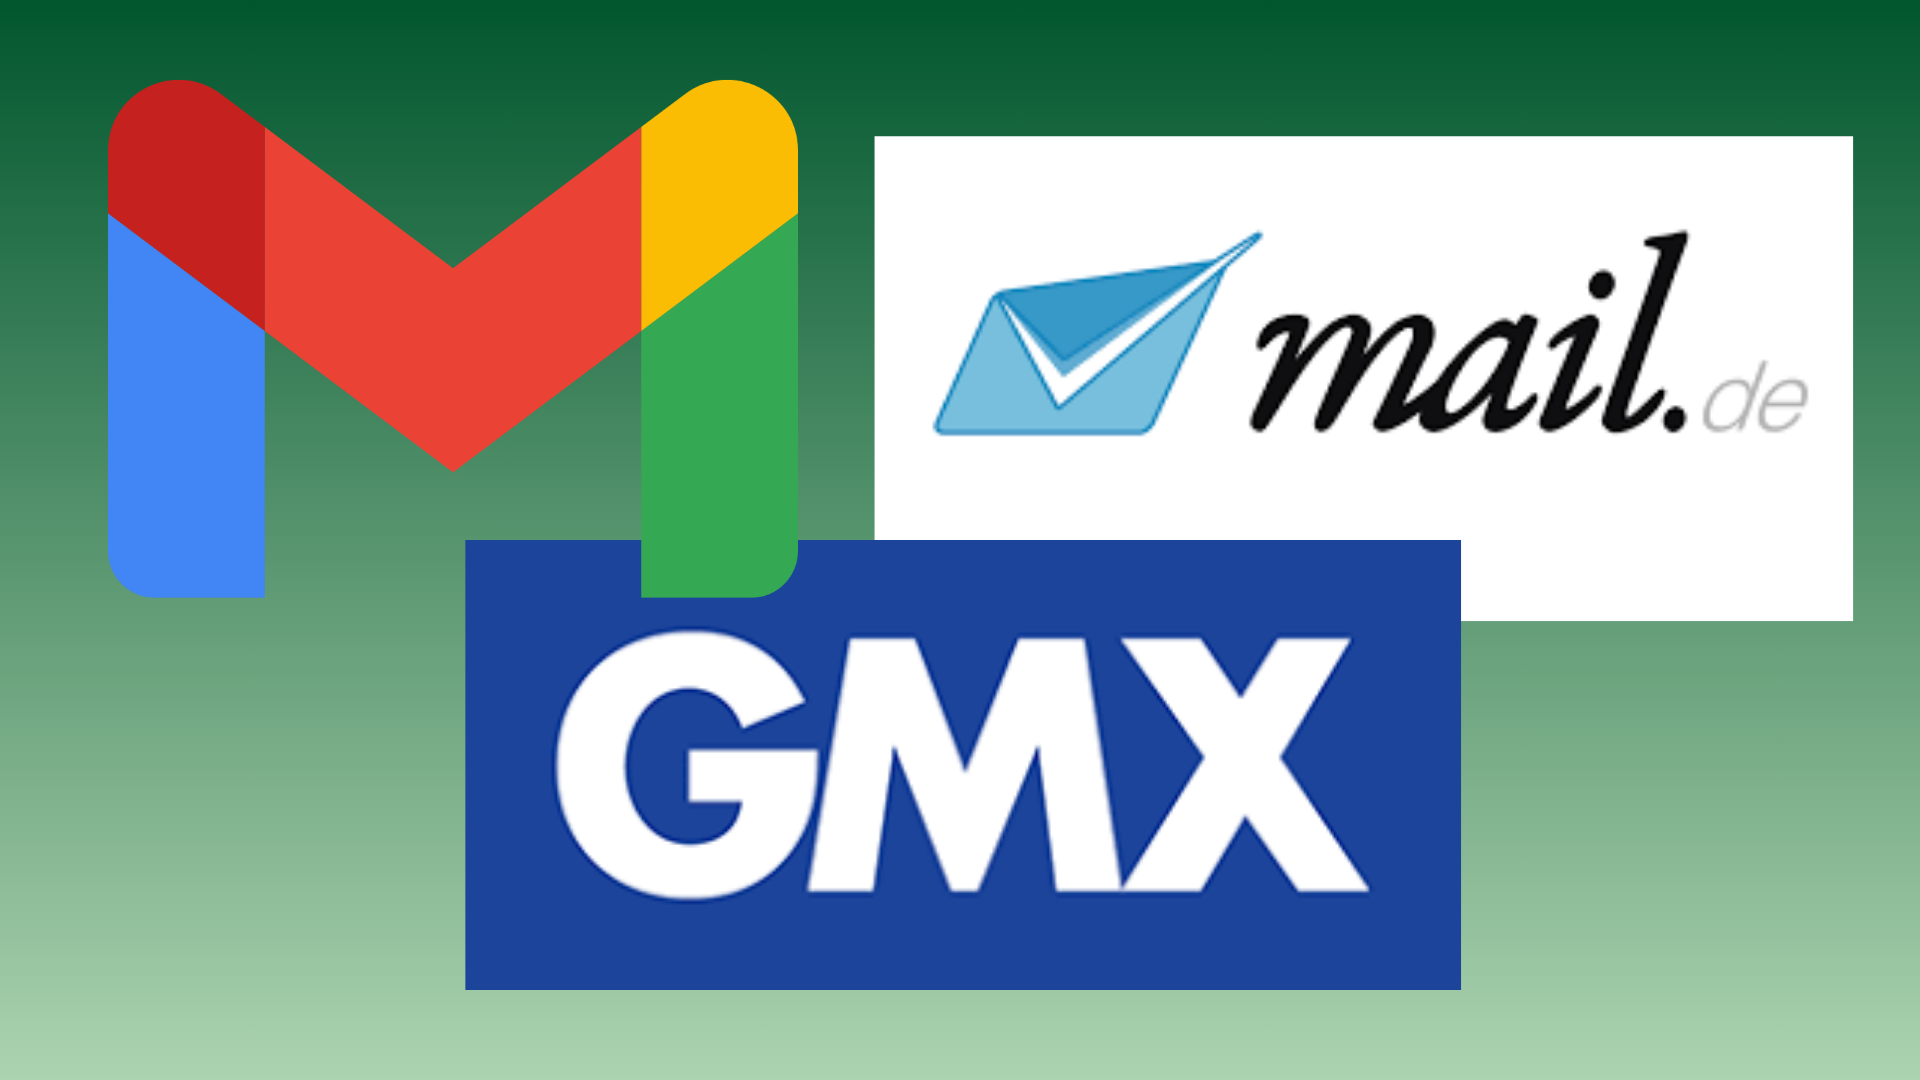 Die Logos von den E-Mail-Anbietern Google, mail.de und GMX sind abgebildet.